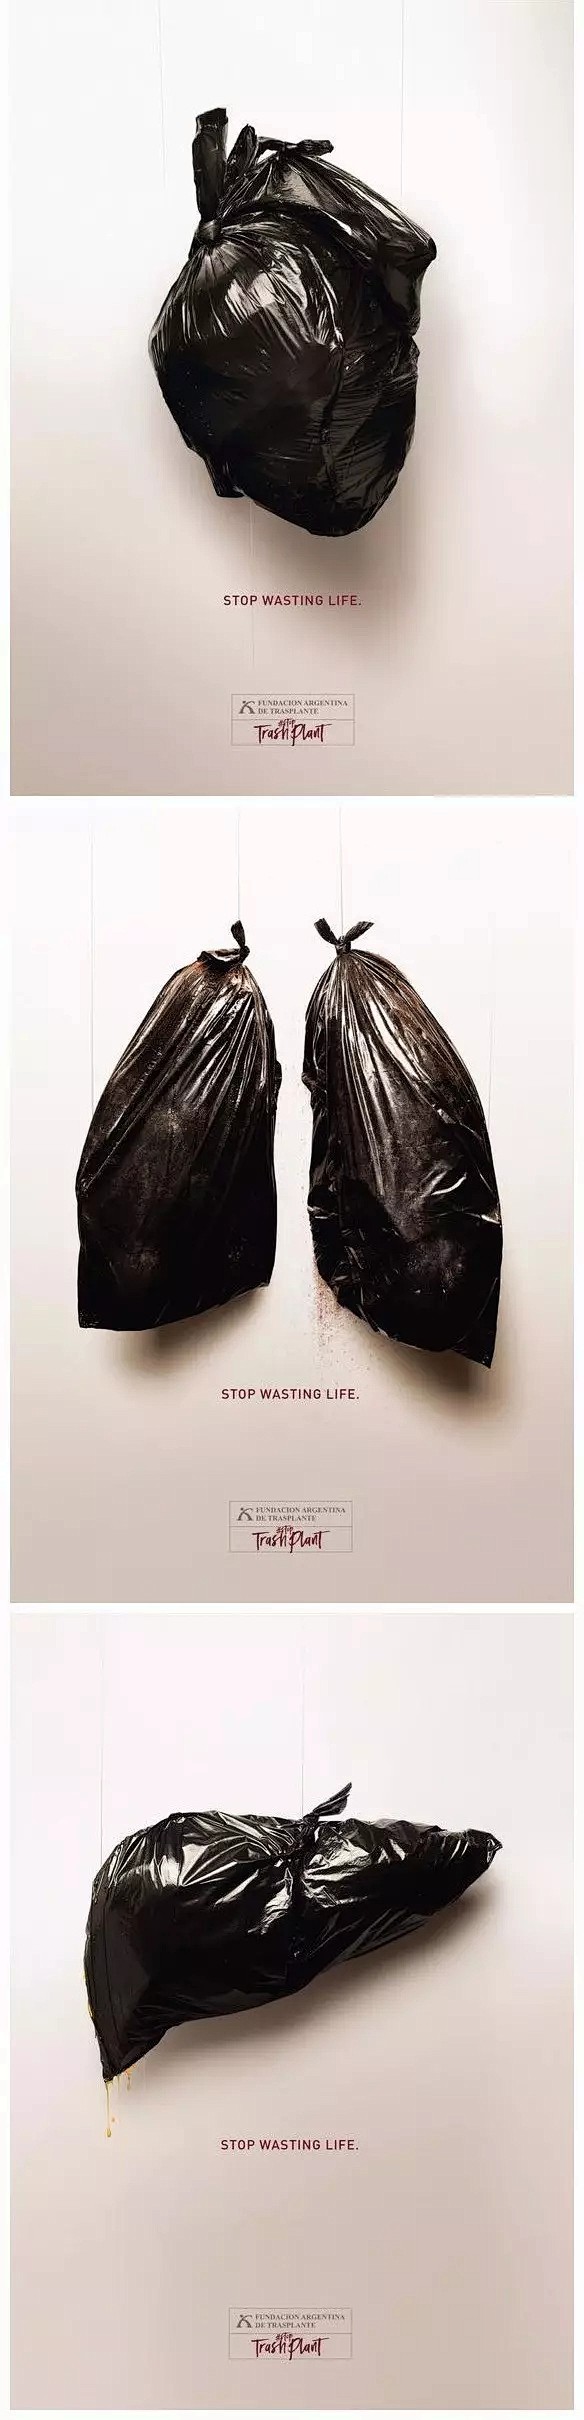 捐赠器官，而不是让它变成垃圾